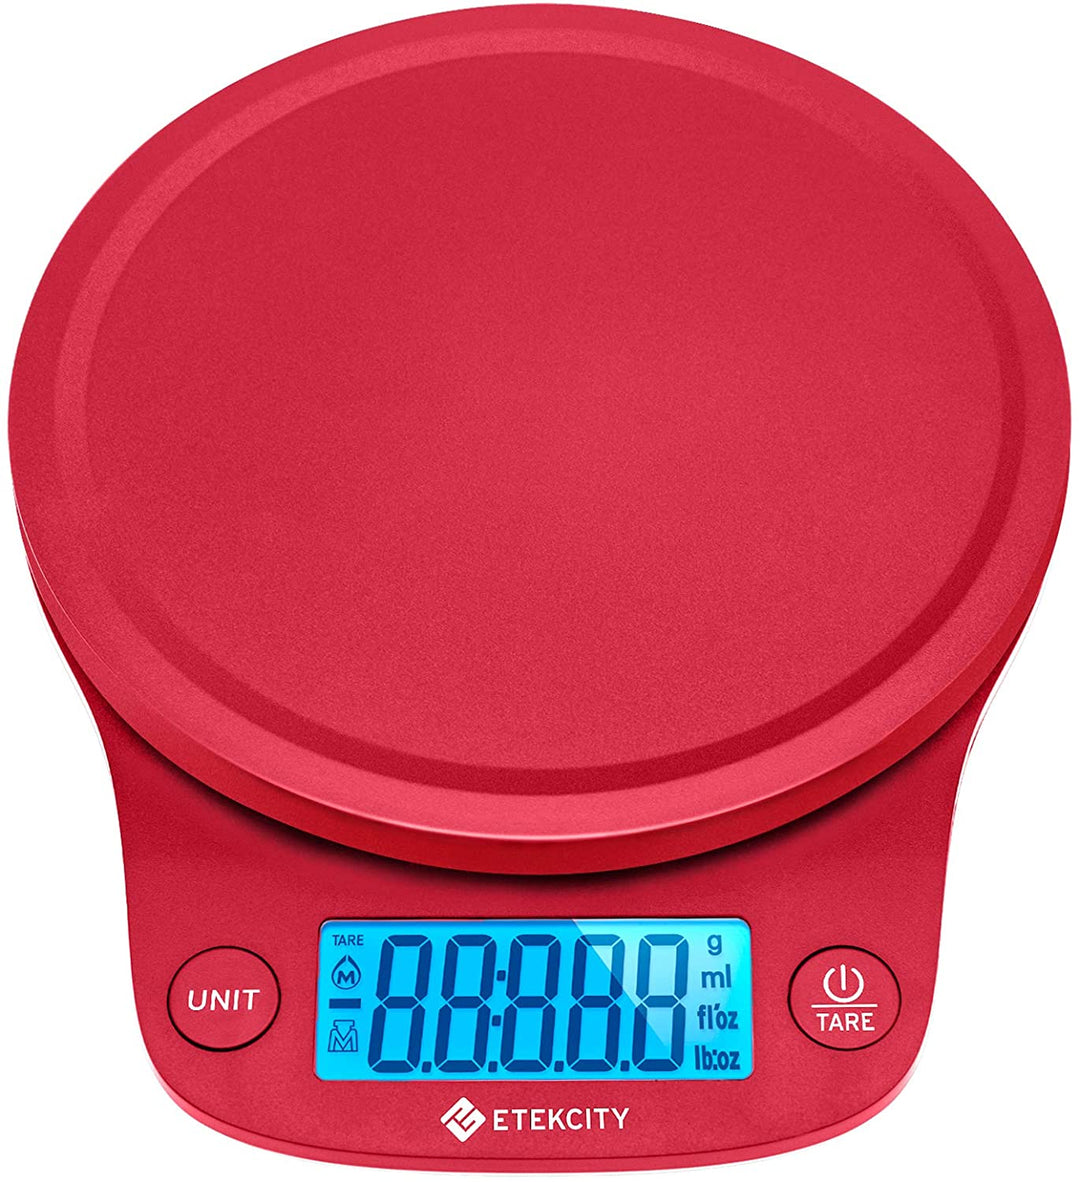 Etekcity Digital Kitchen Scale in Red 